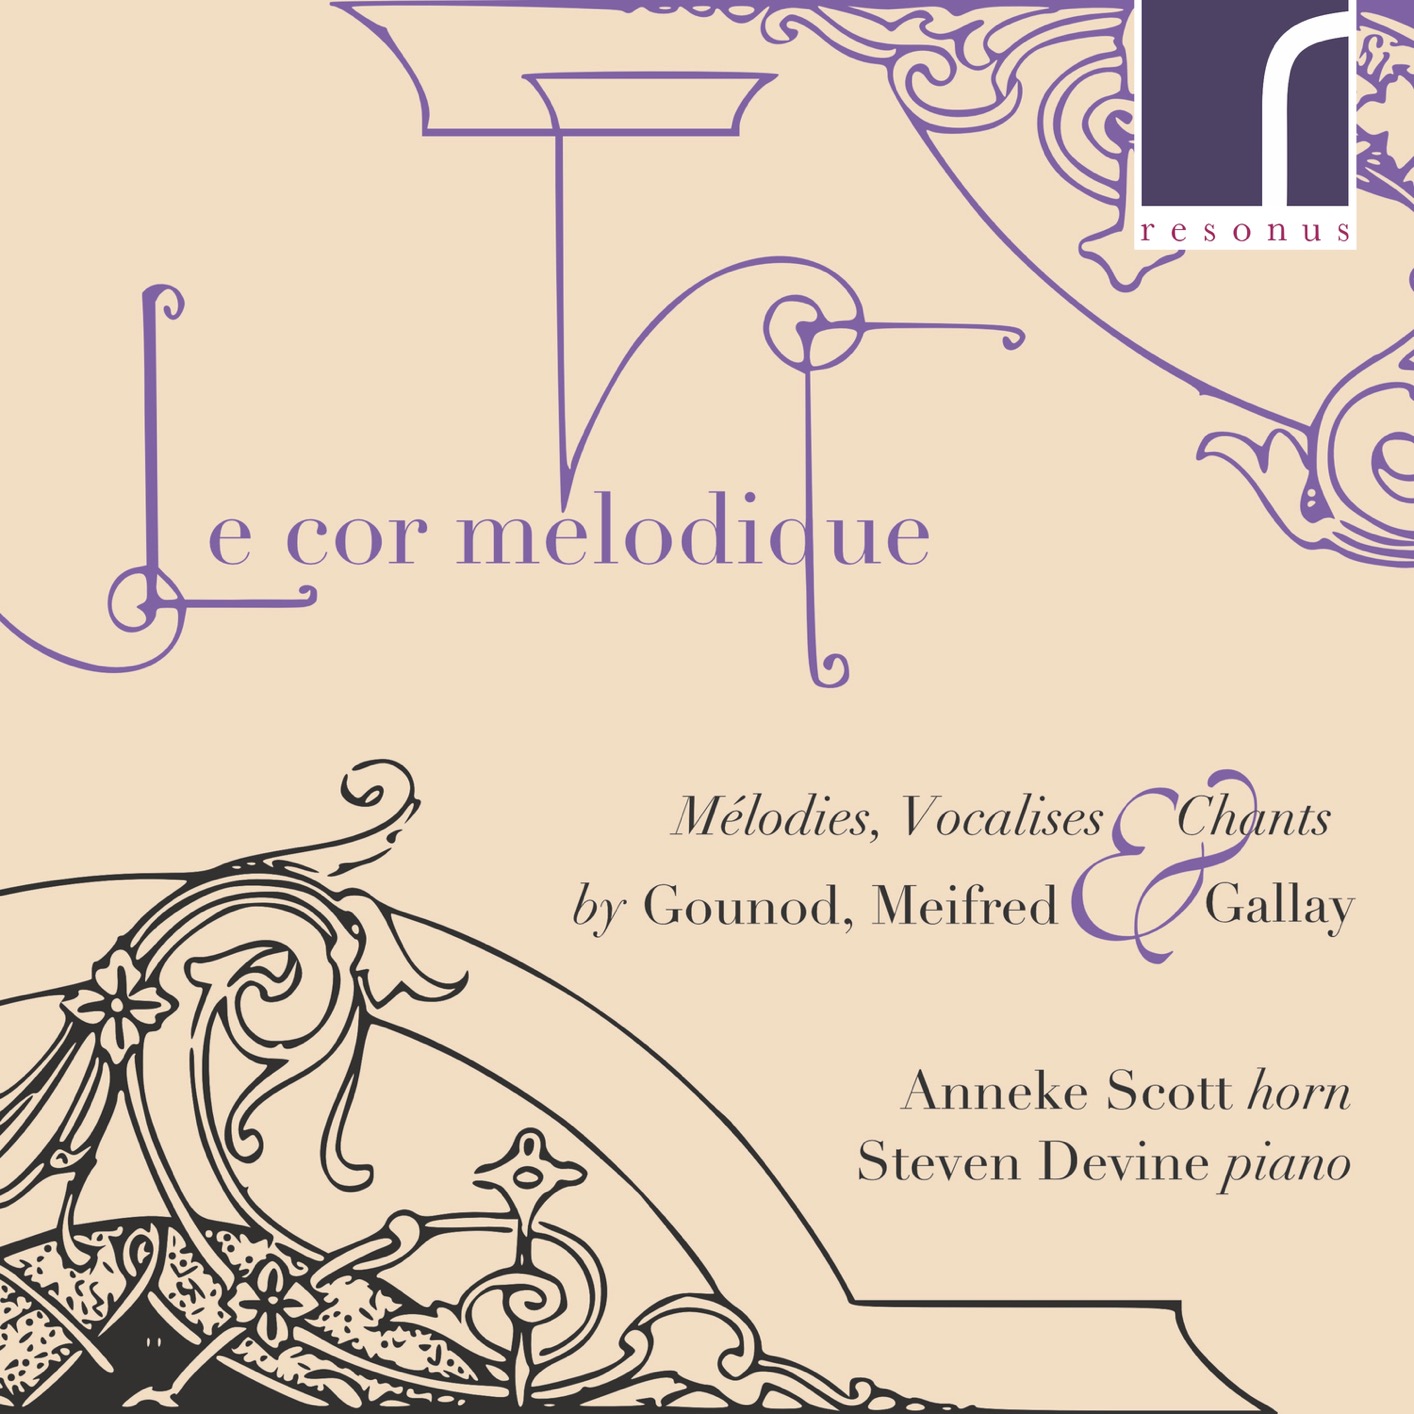 Anneke Scott & Steven Devine – Le Cor Melodique: Melodies, Vocalises & Chants by Gounod, Meifred & Gallay (2018) [FLAC 24bit/96kHz]